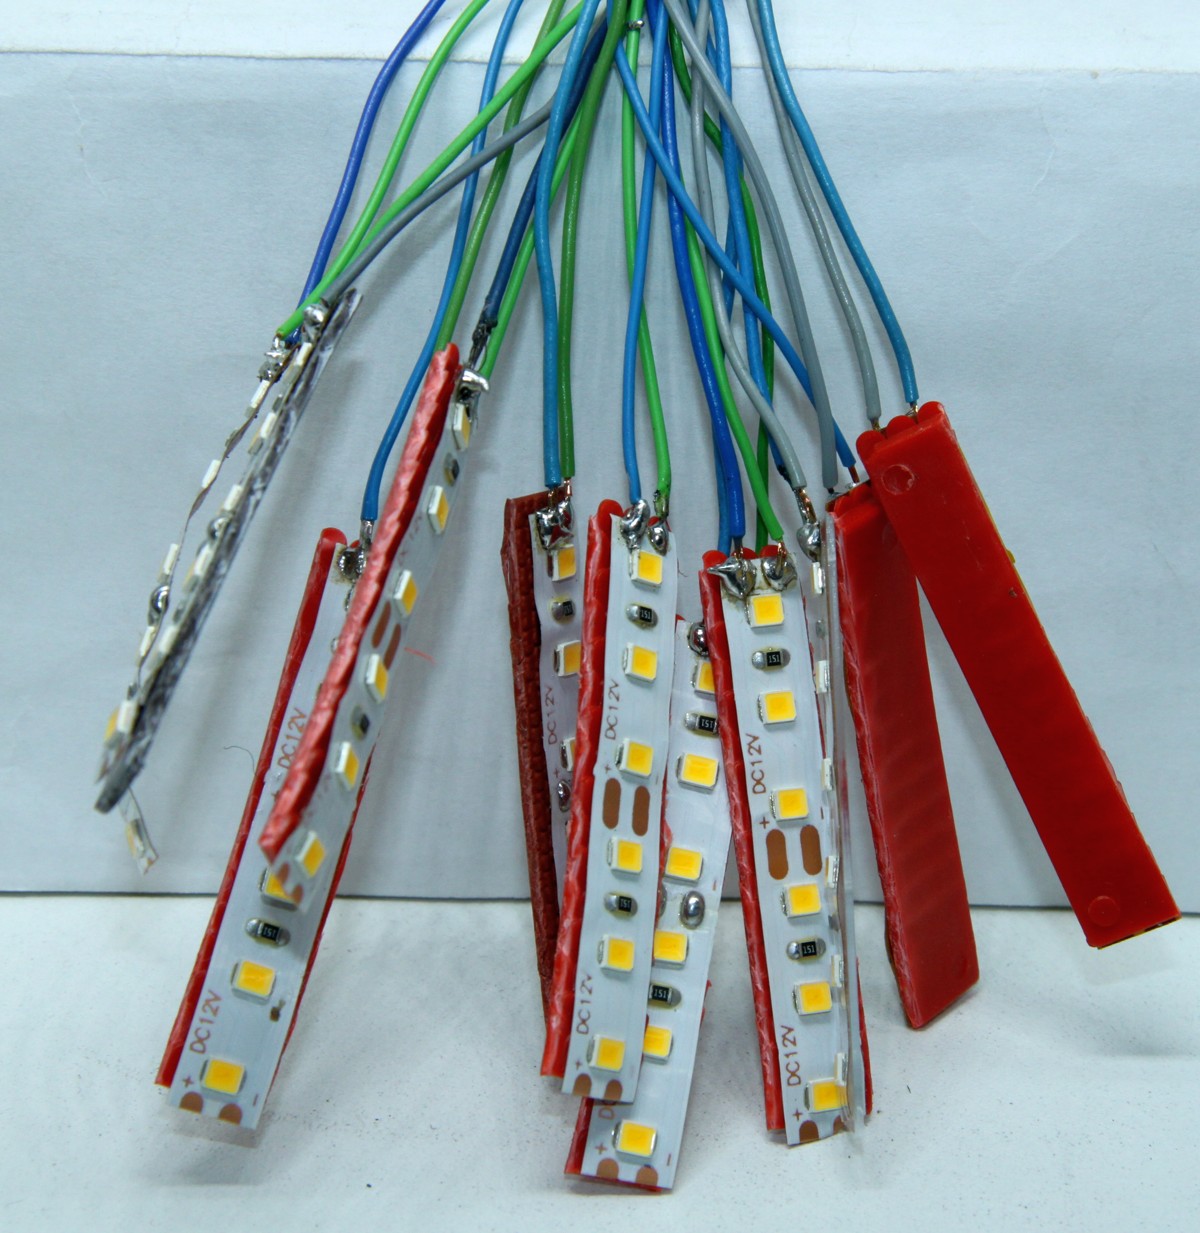 5 Stück MINI LED Hausbeleuchtung mit Kabel für Gebäude, Leuchtfarbe weiß, Streifen mit 6 SMD-LEDs, mit angelötetem Kabel ca. 25 cm lang. 